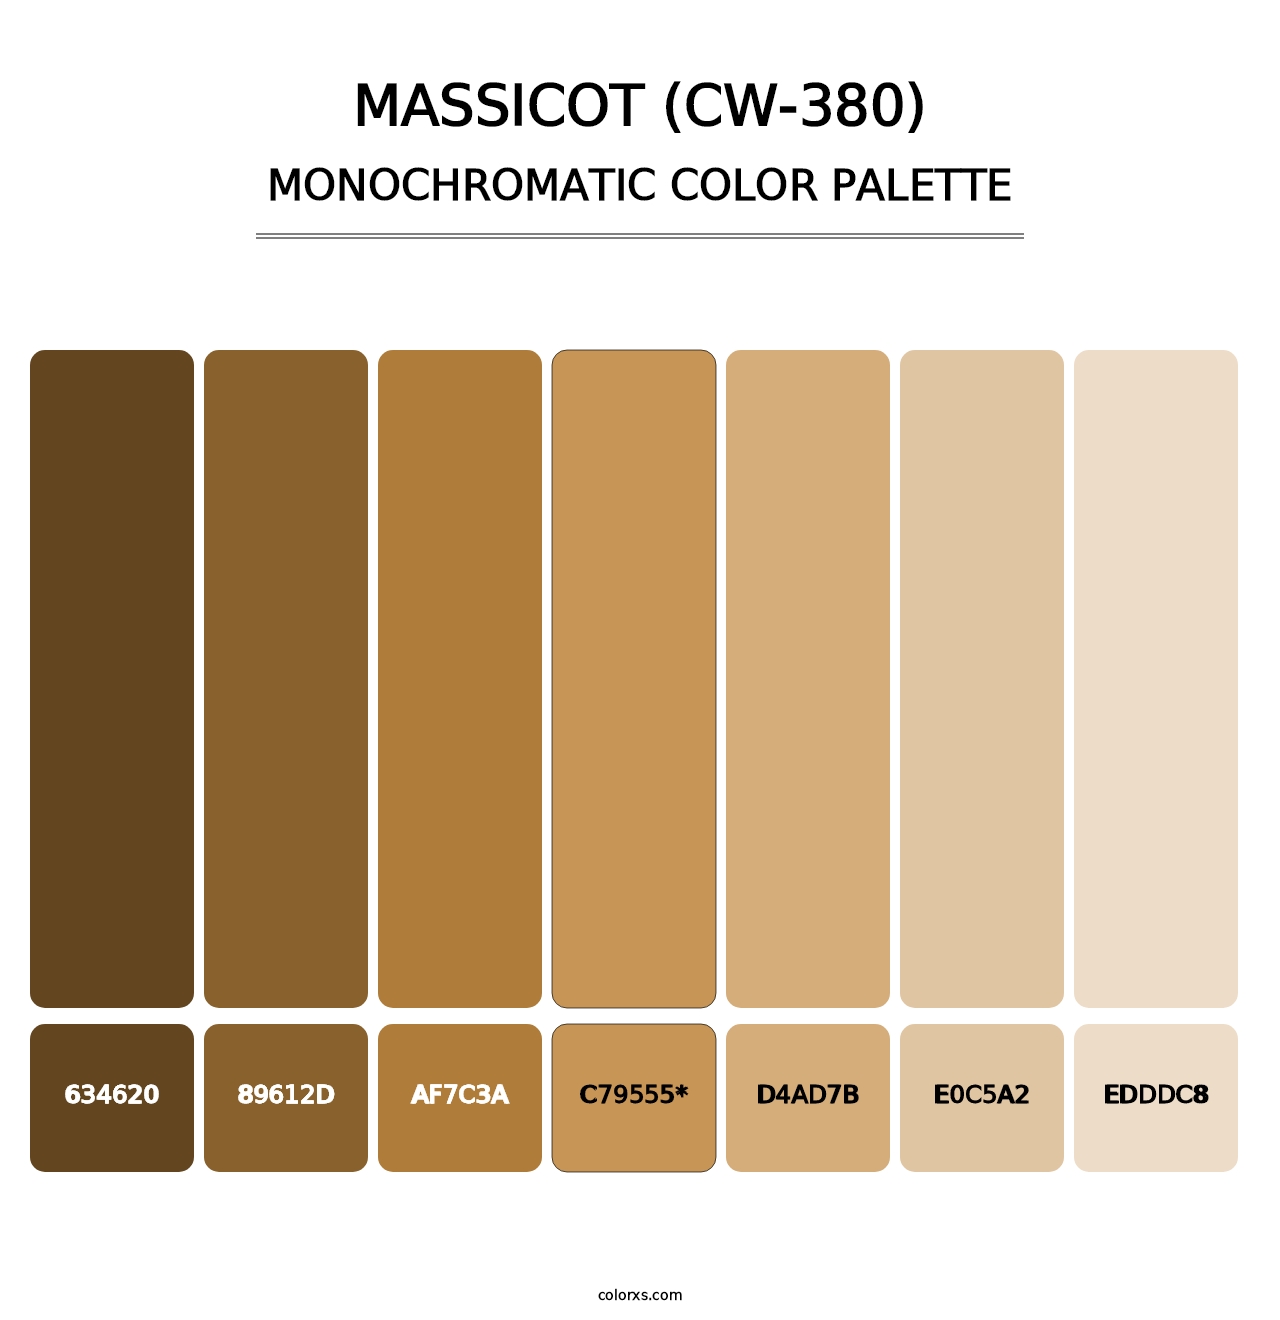 Massicot (CW-380) - Monochromatic Color Palette